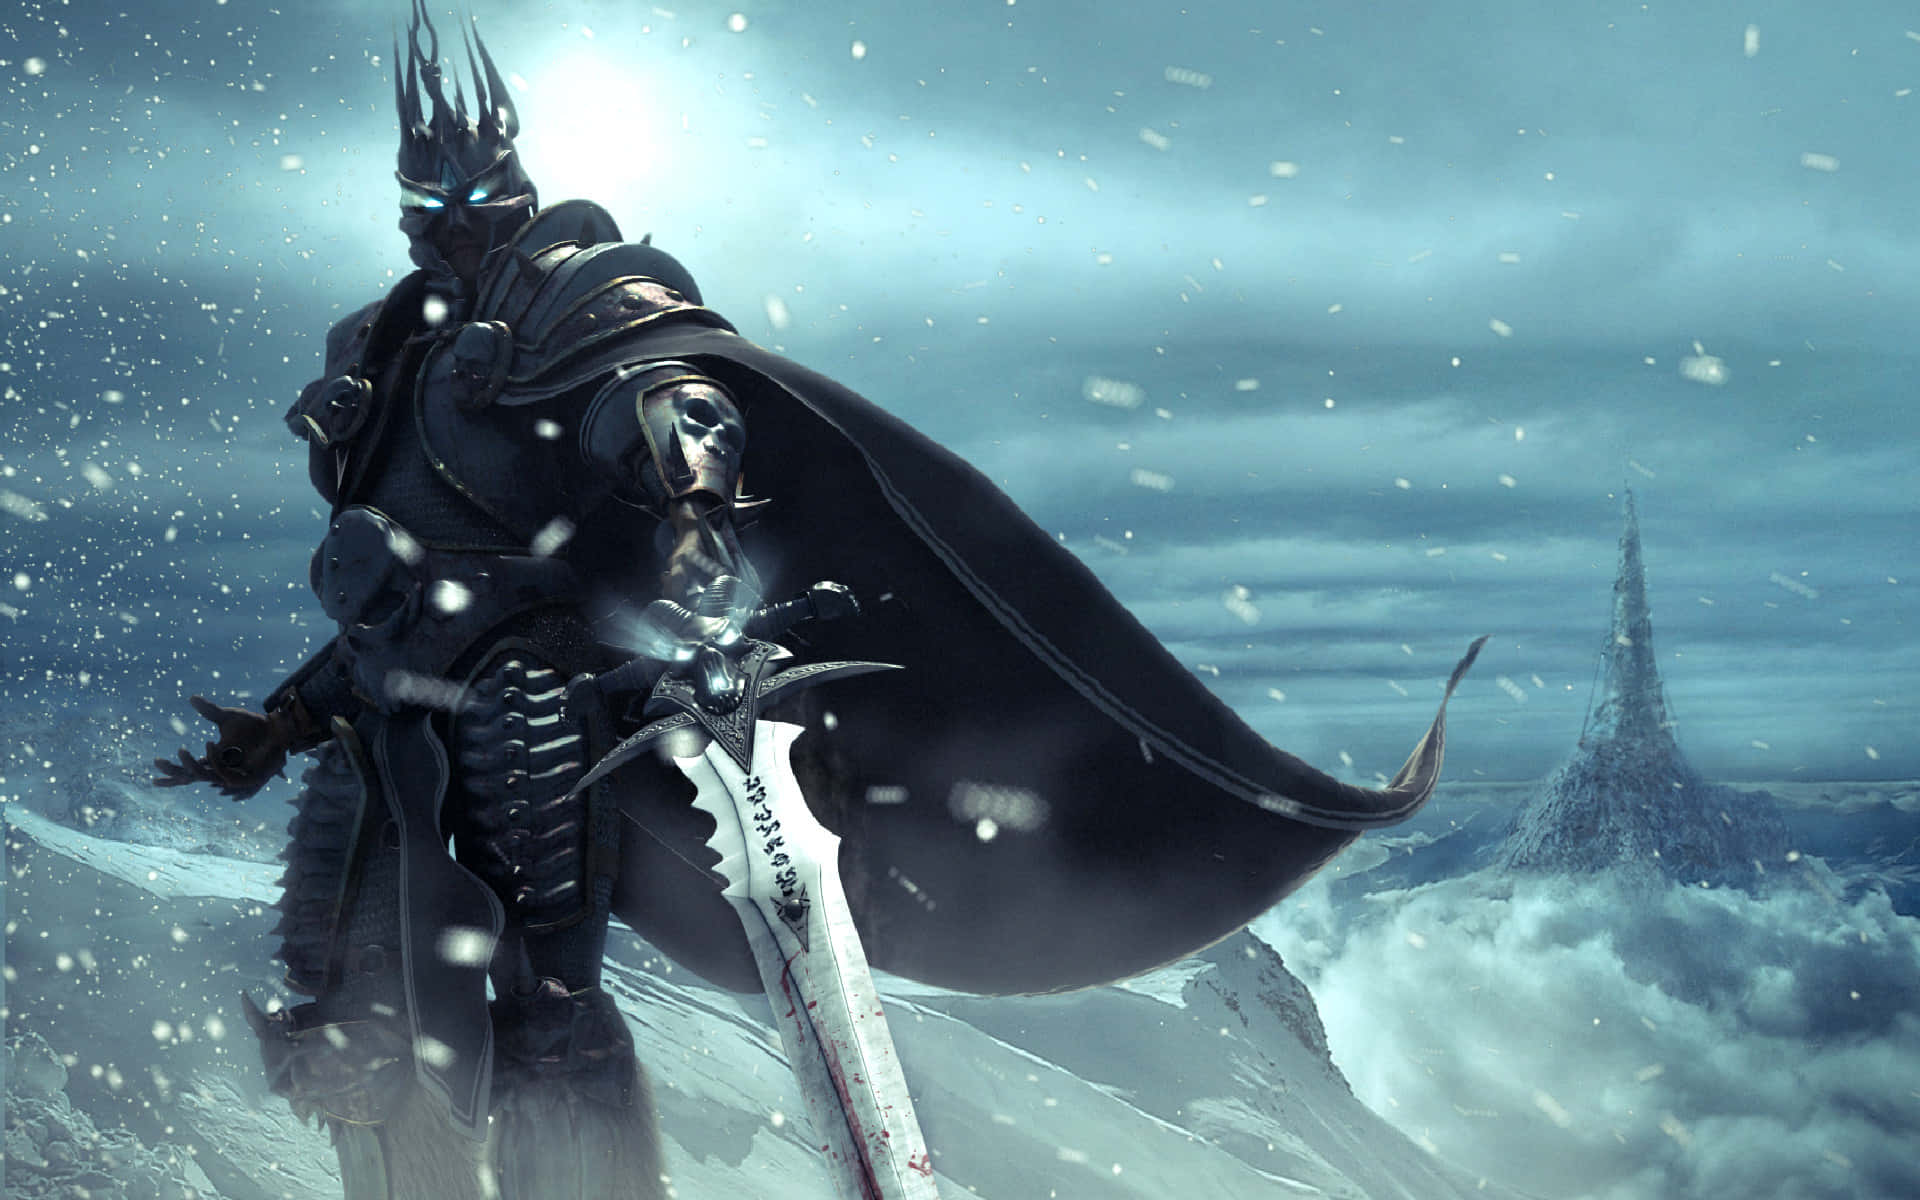 Dark Knight In Snowy Landscape Wallpaper